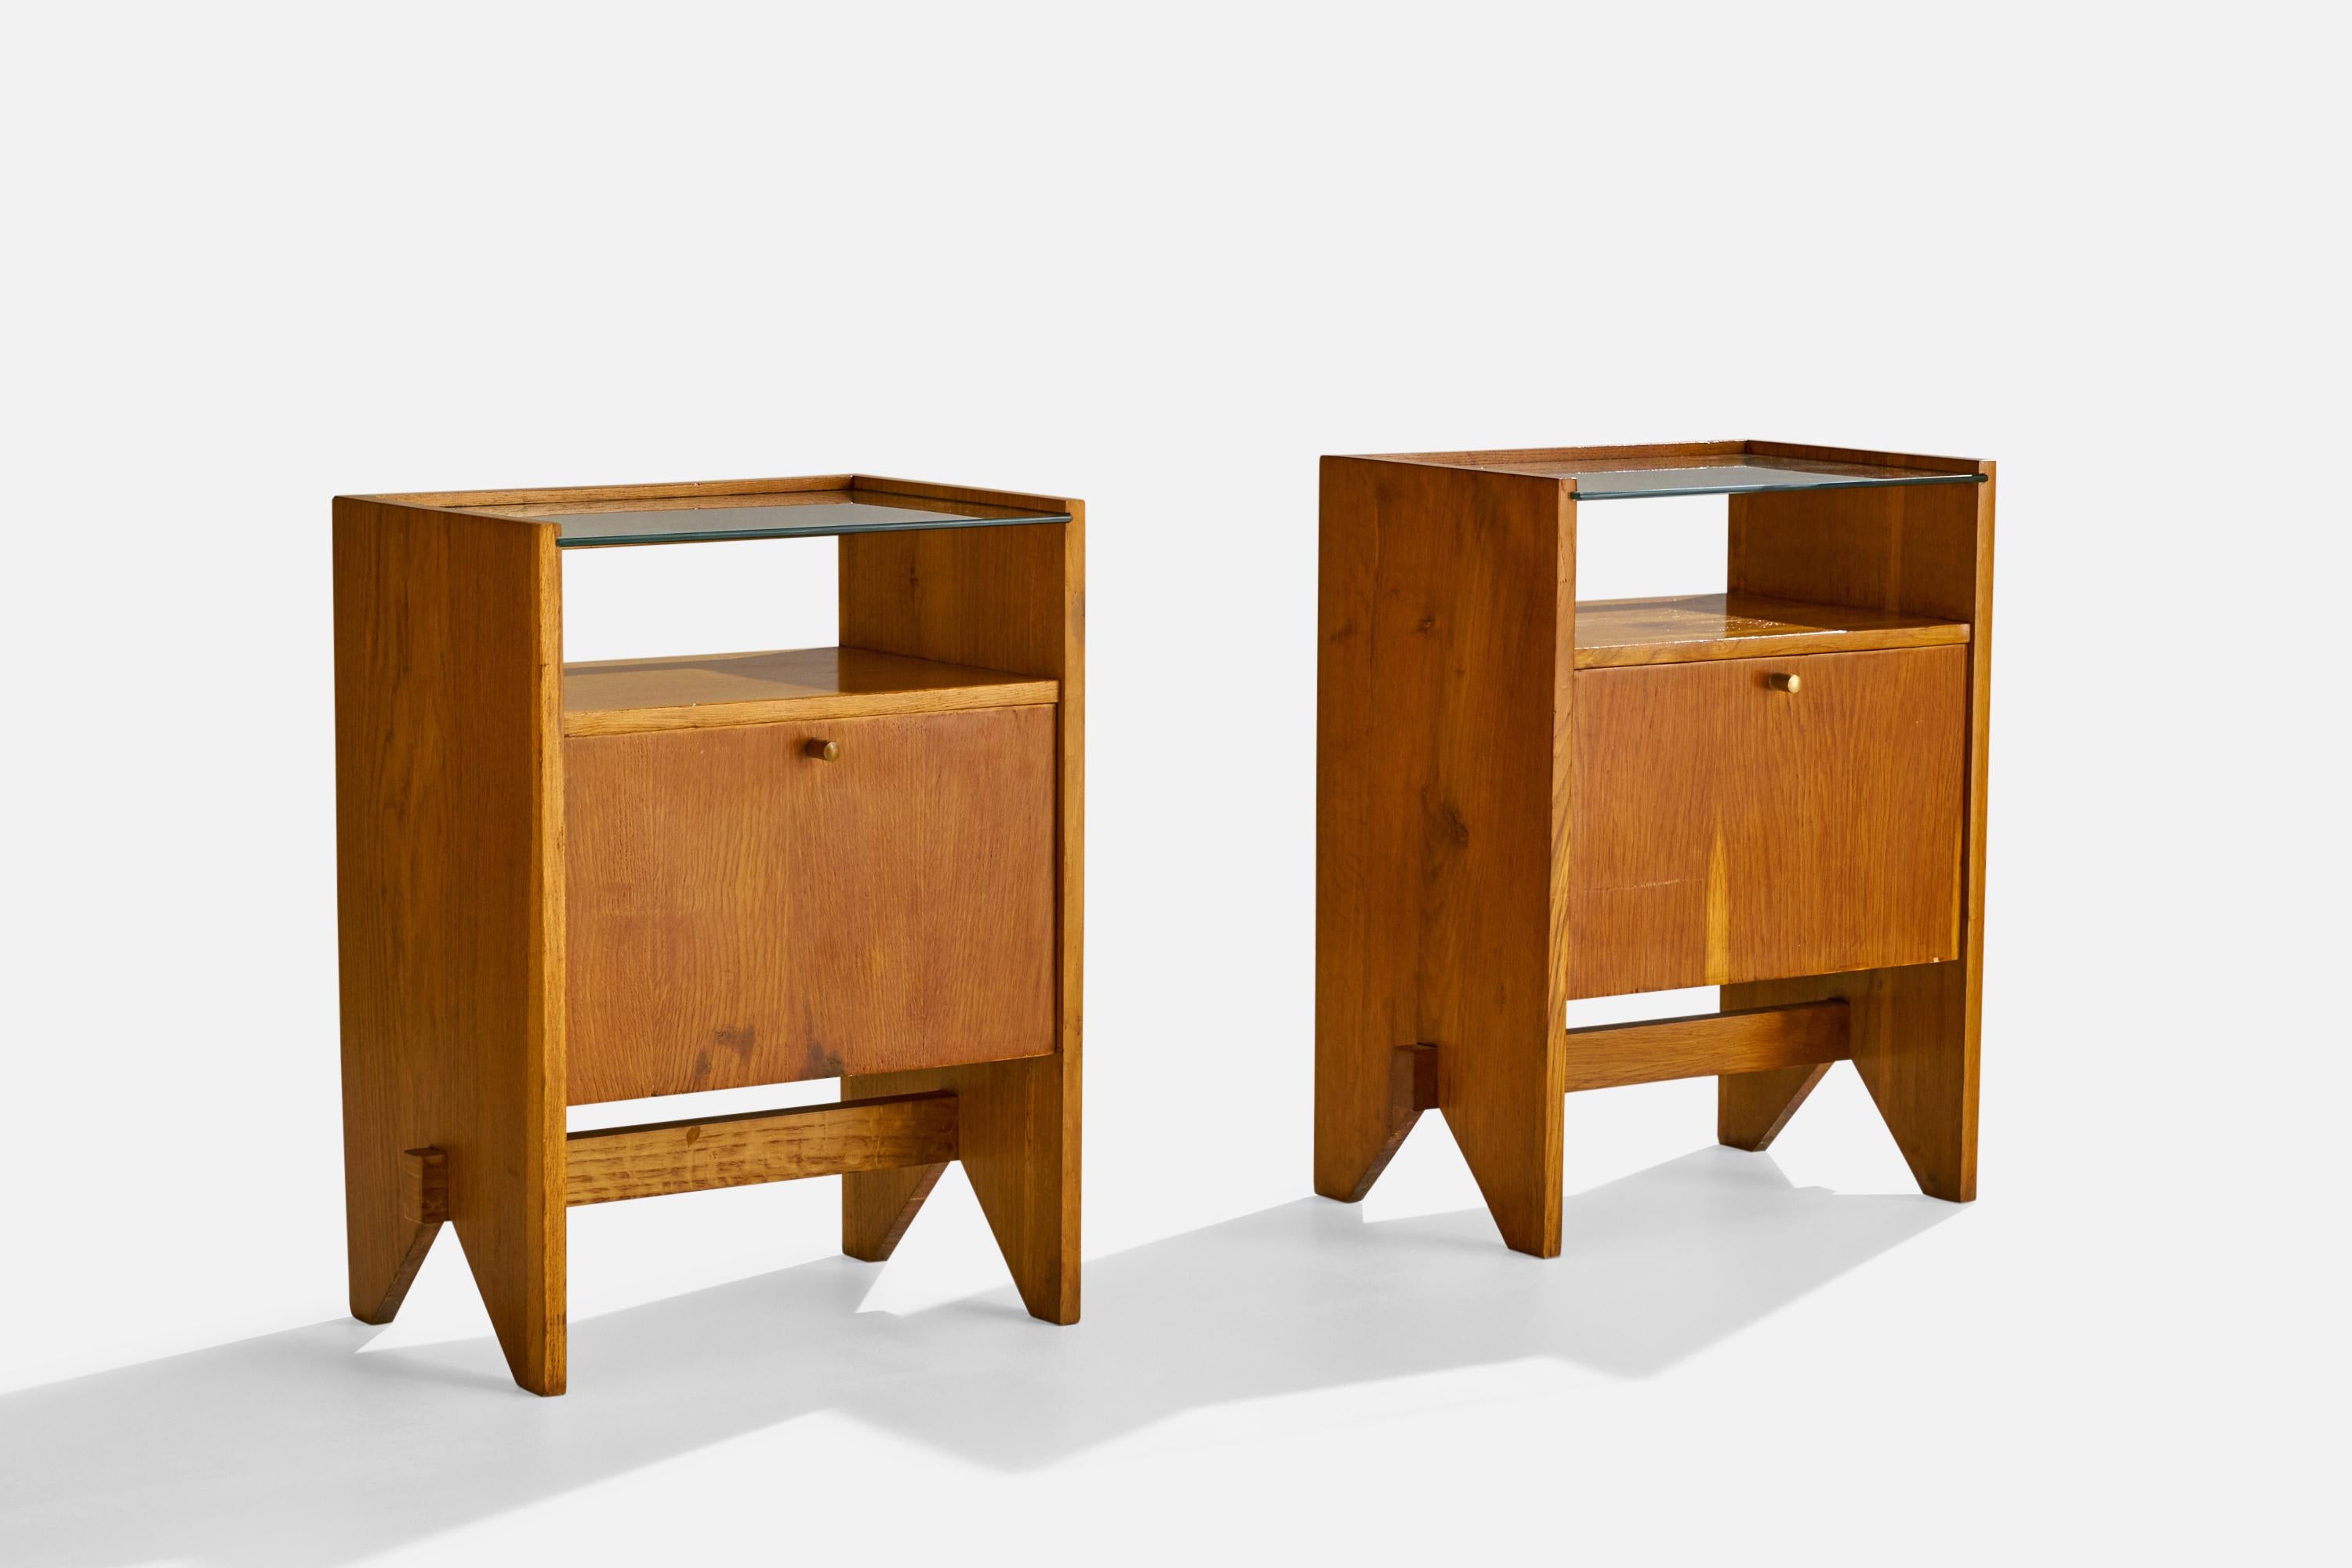 Paire de tables de nuit en bois, verre et laiton, conçues et produites par Design/One, Italie, vers les années 1950.